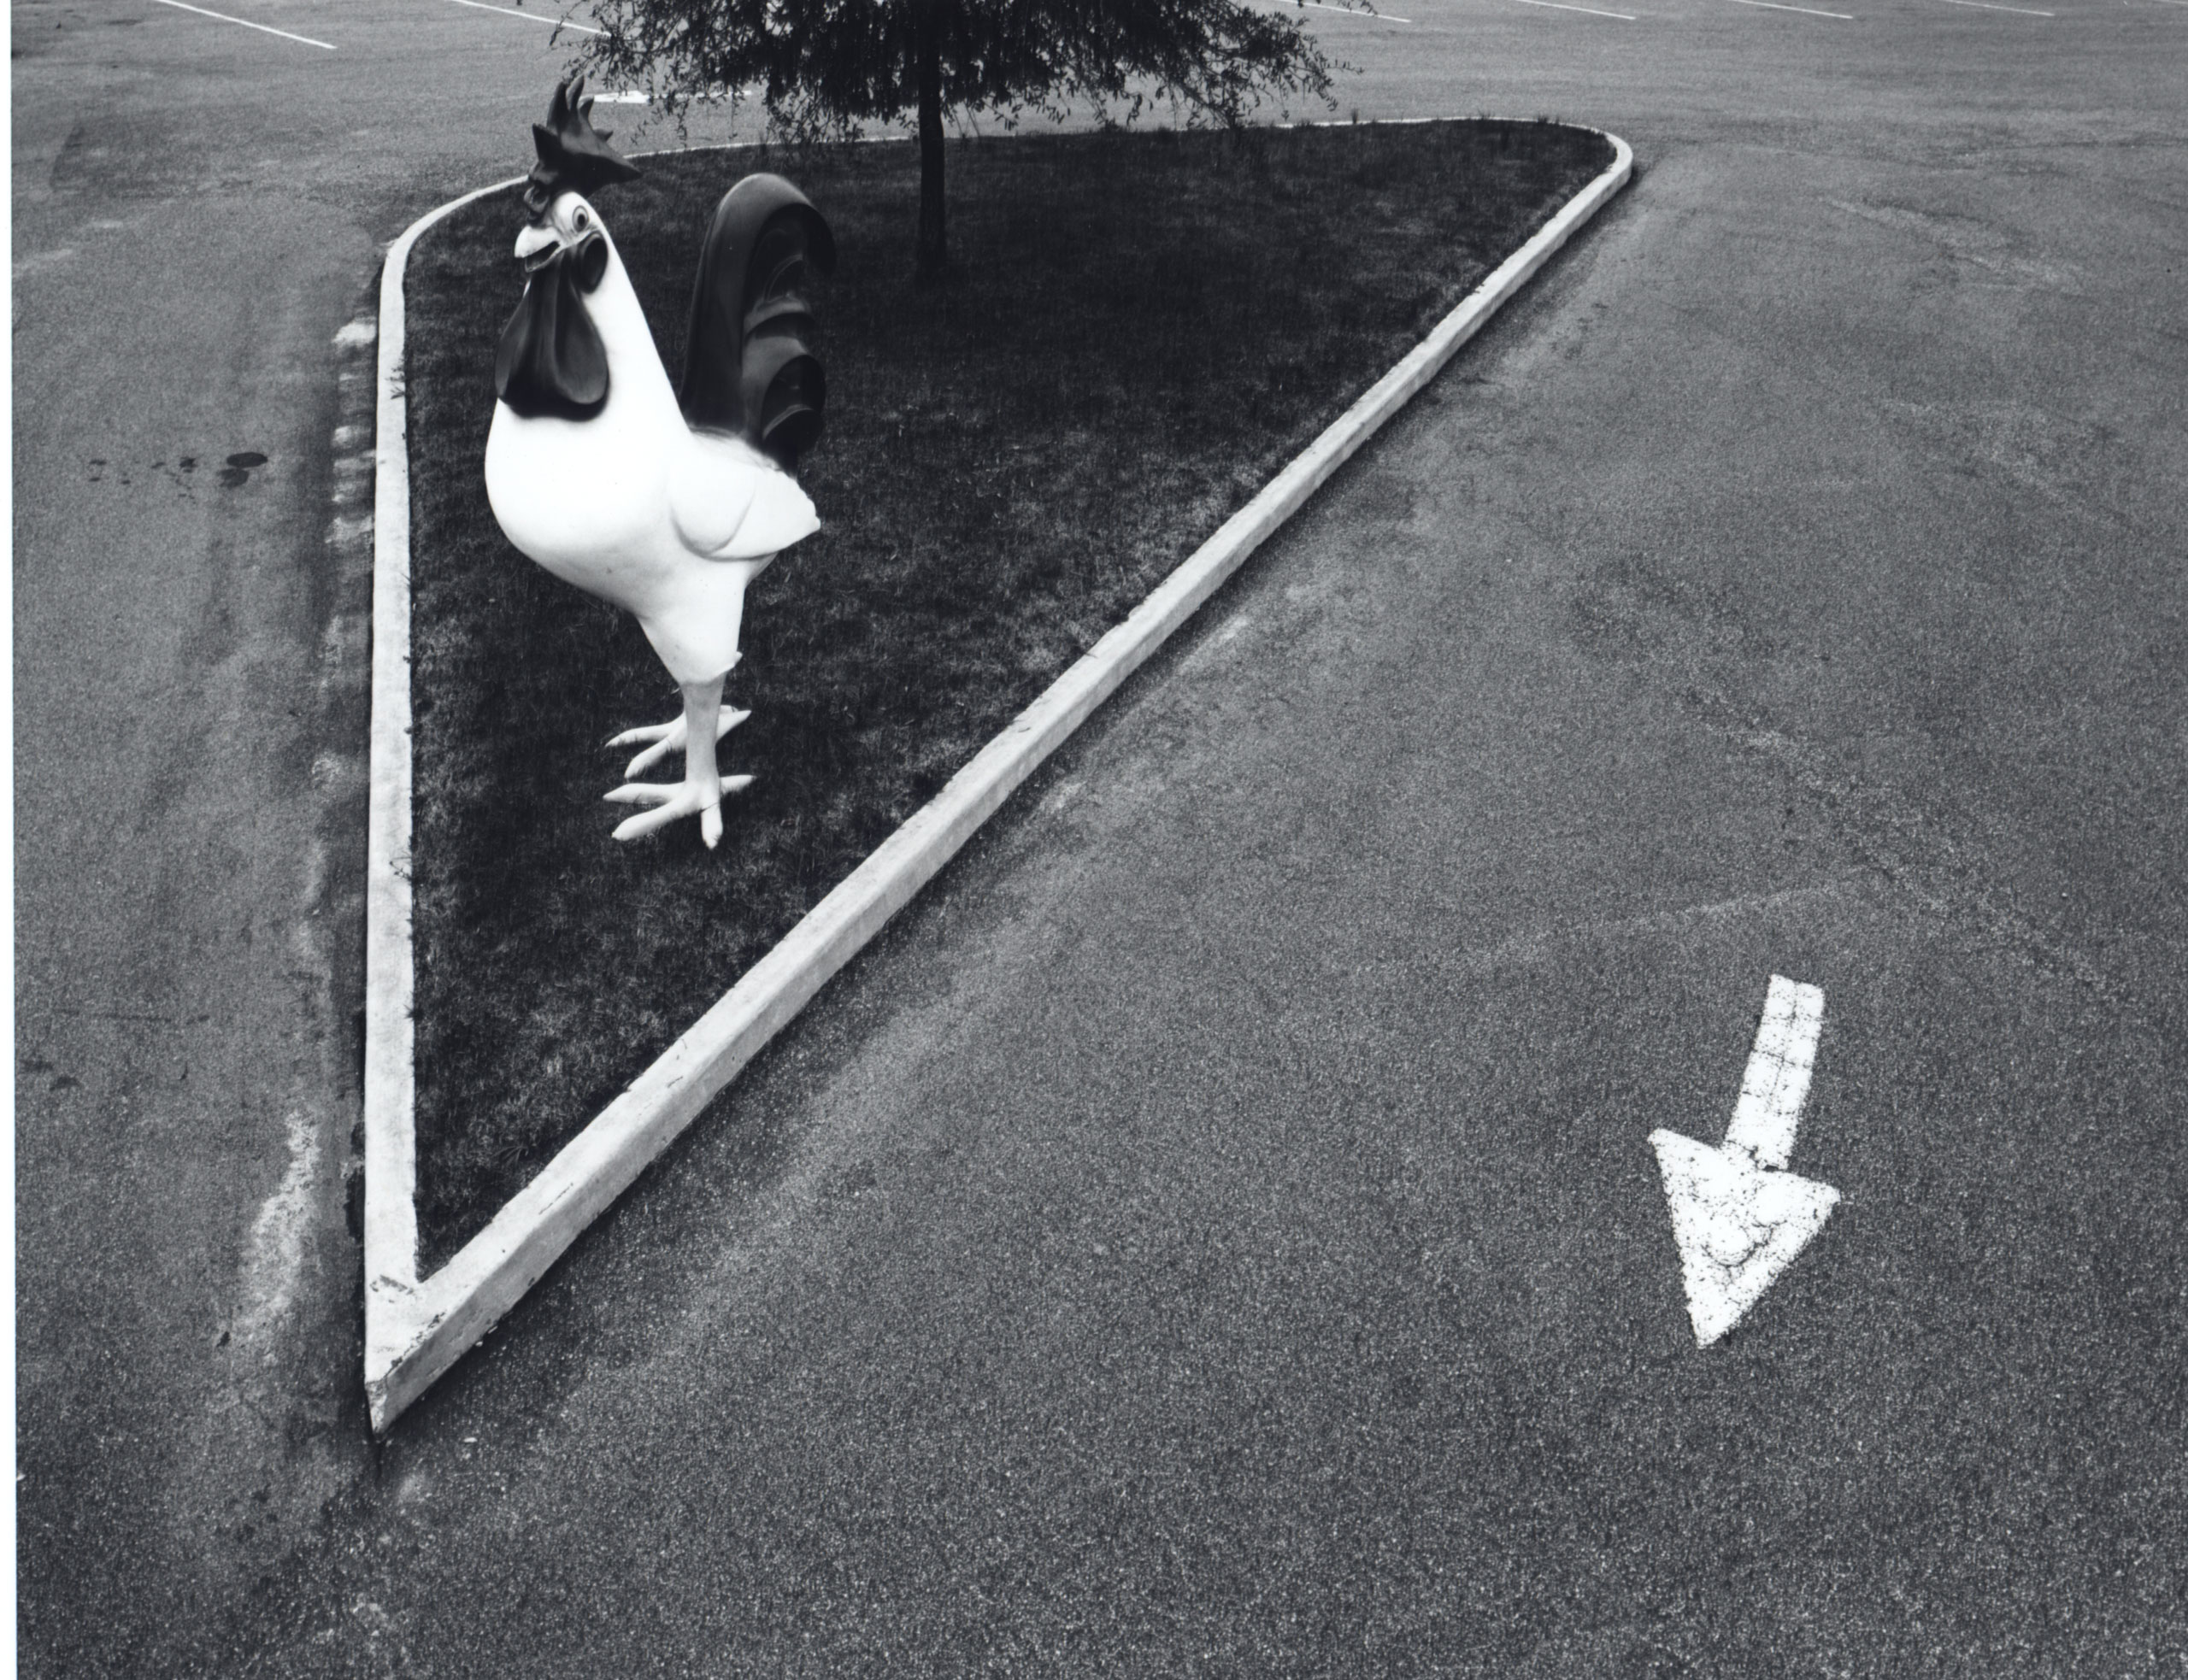 Big Rooster, Wilson, N.C., 1970